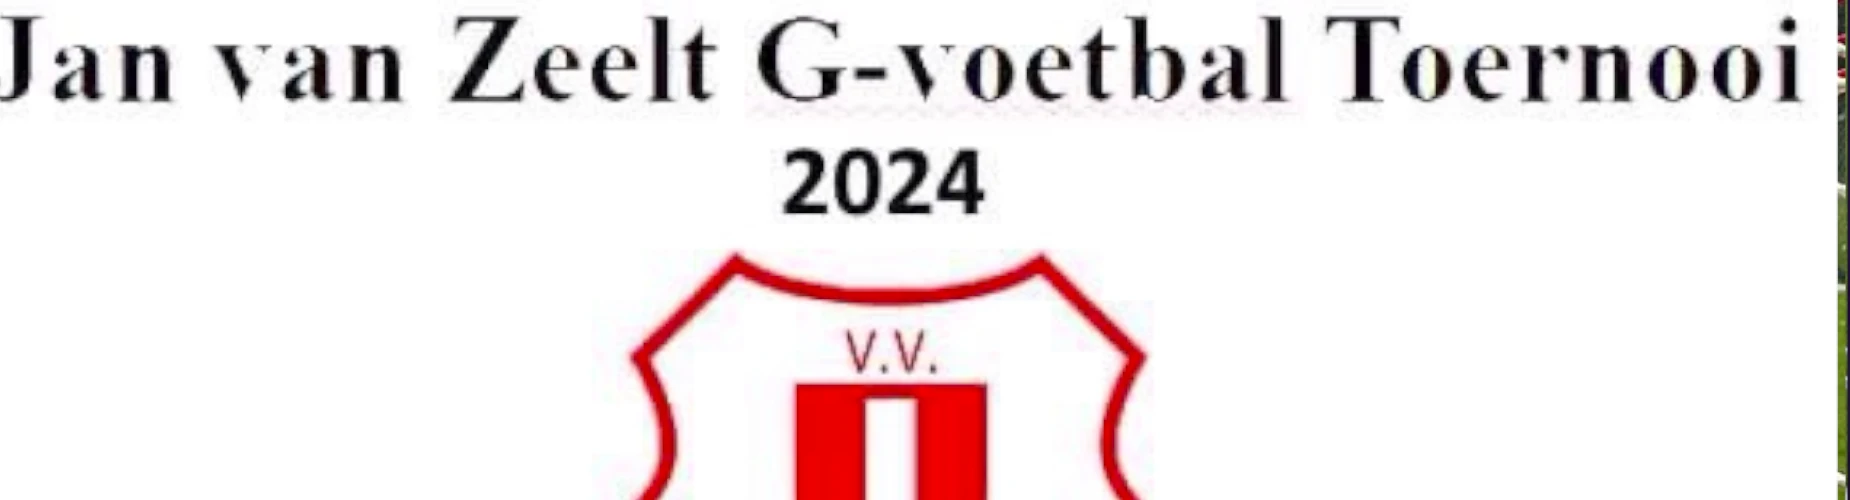 Banner - Jan van Zeelt G-voetbal toernooi 2024 - vv Waterloo - Driehuis NH